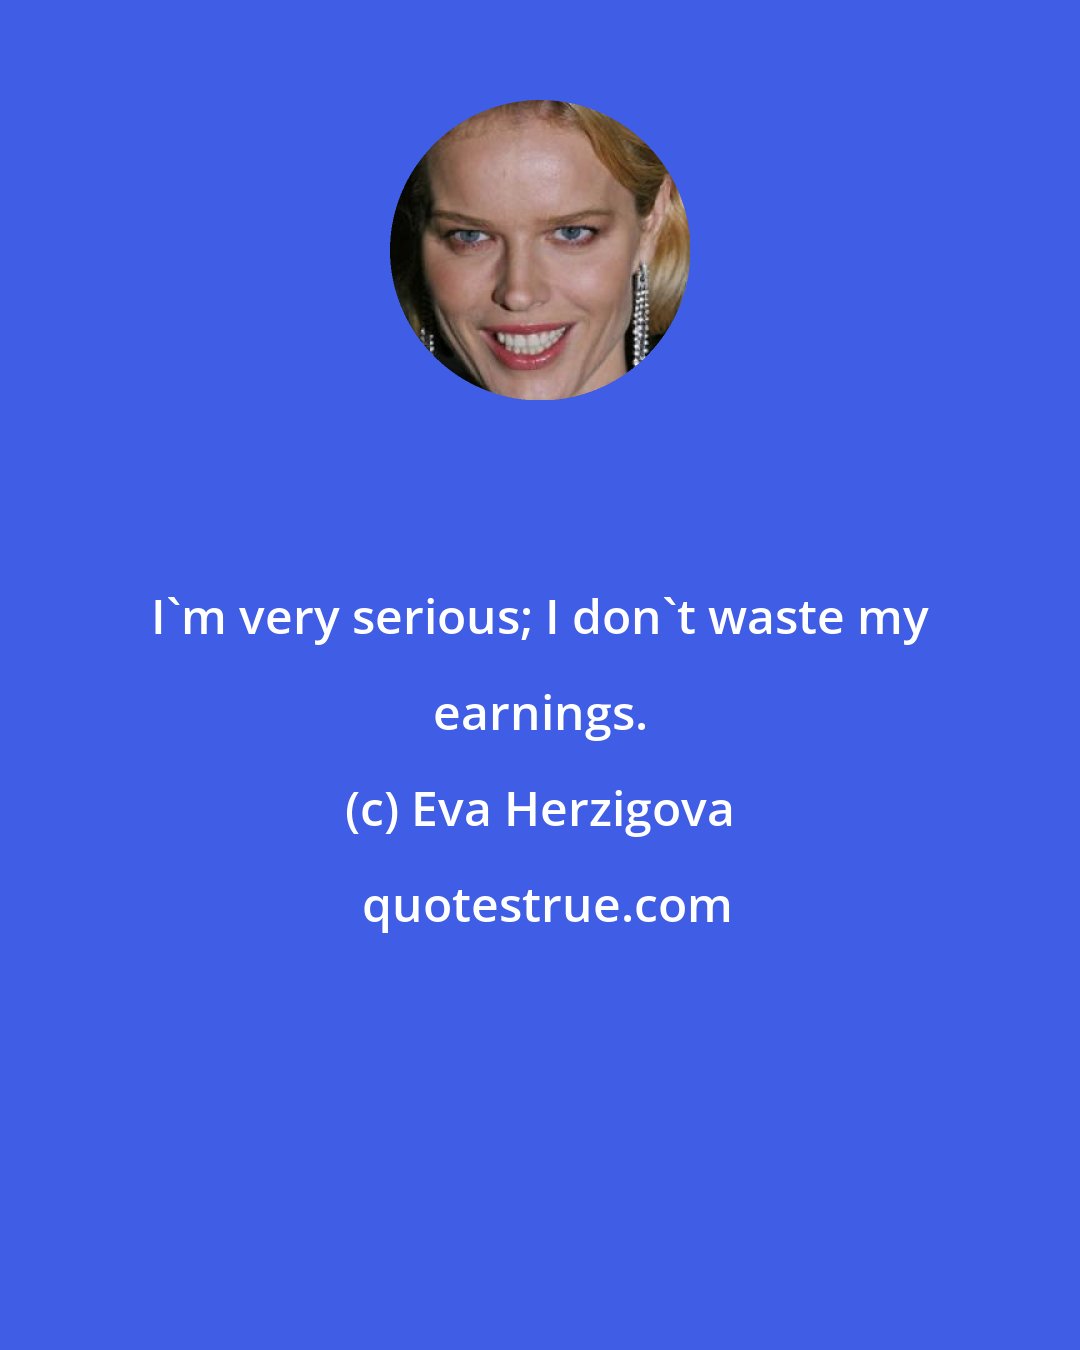 Eva Herzigova: I'm very serious; I don't waste my earnings.